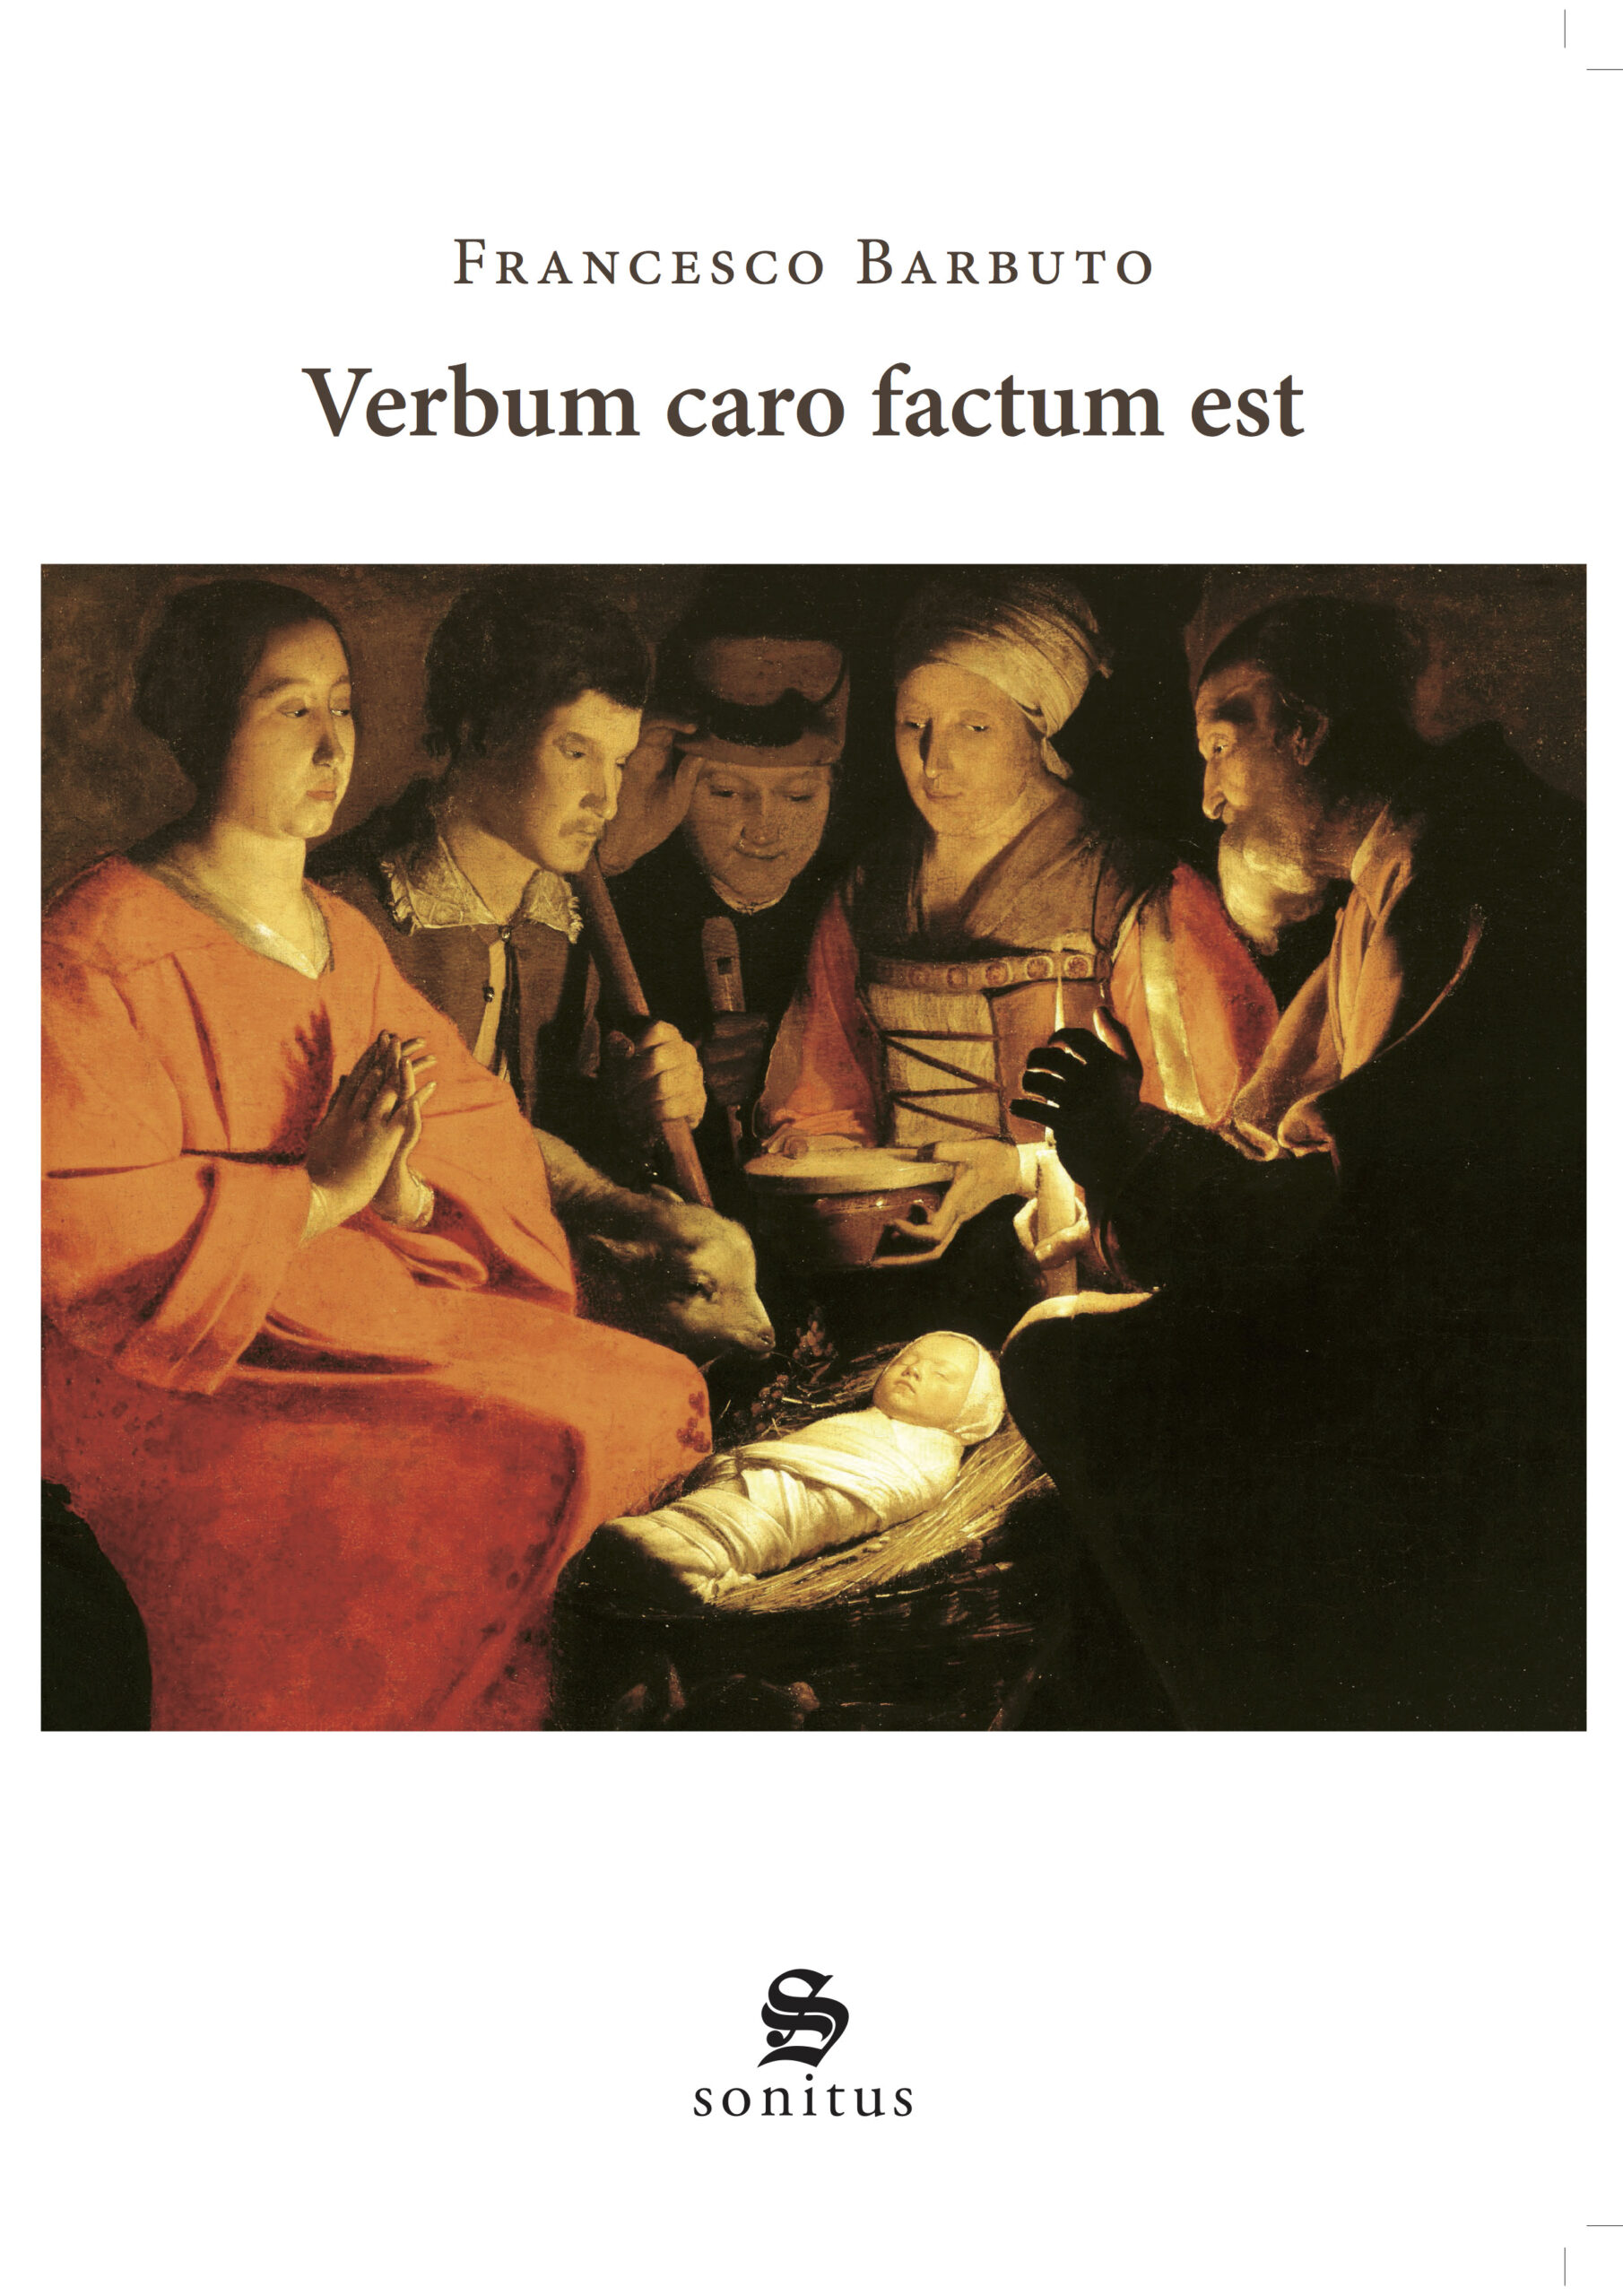 Copertina dell'impaginato Verbum caro factum est - SONITUS copia